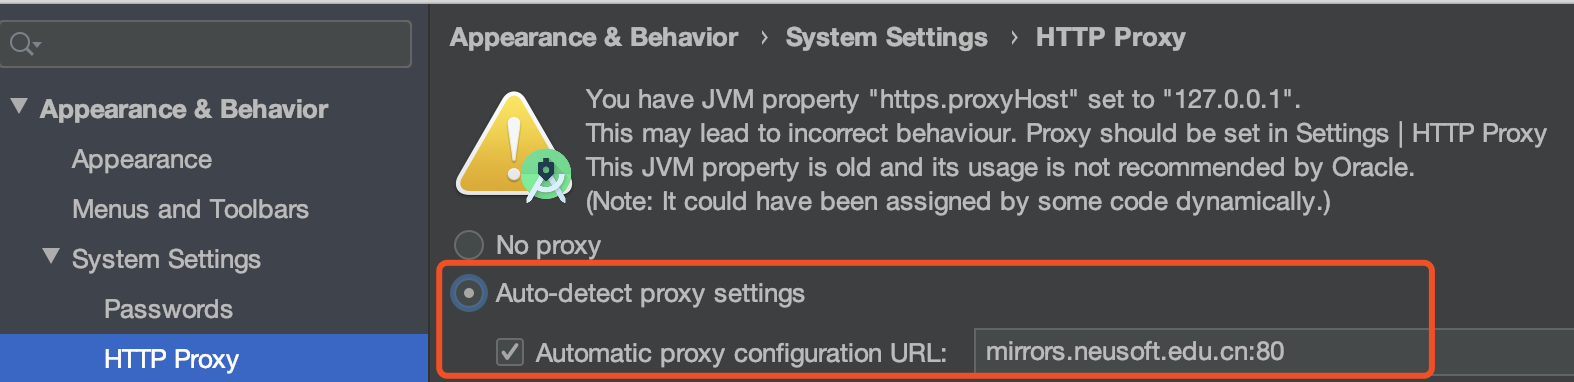 Auto-detect proxy setting